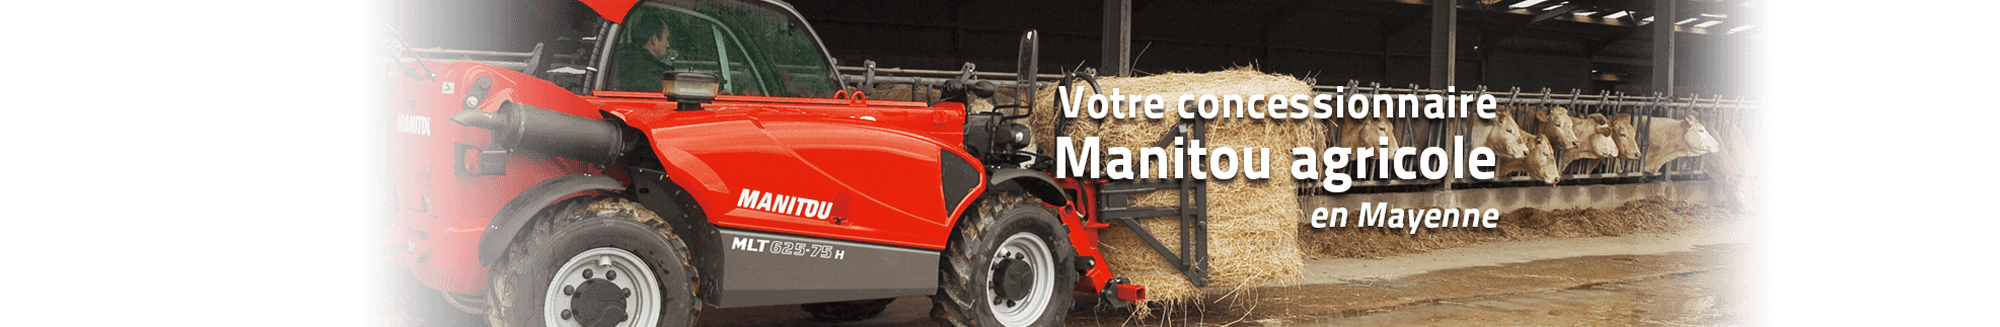 Votre concessionnaire Manitou agricole en Mayenne